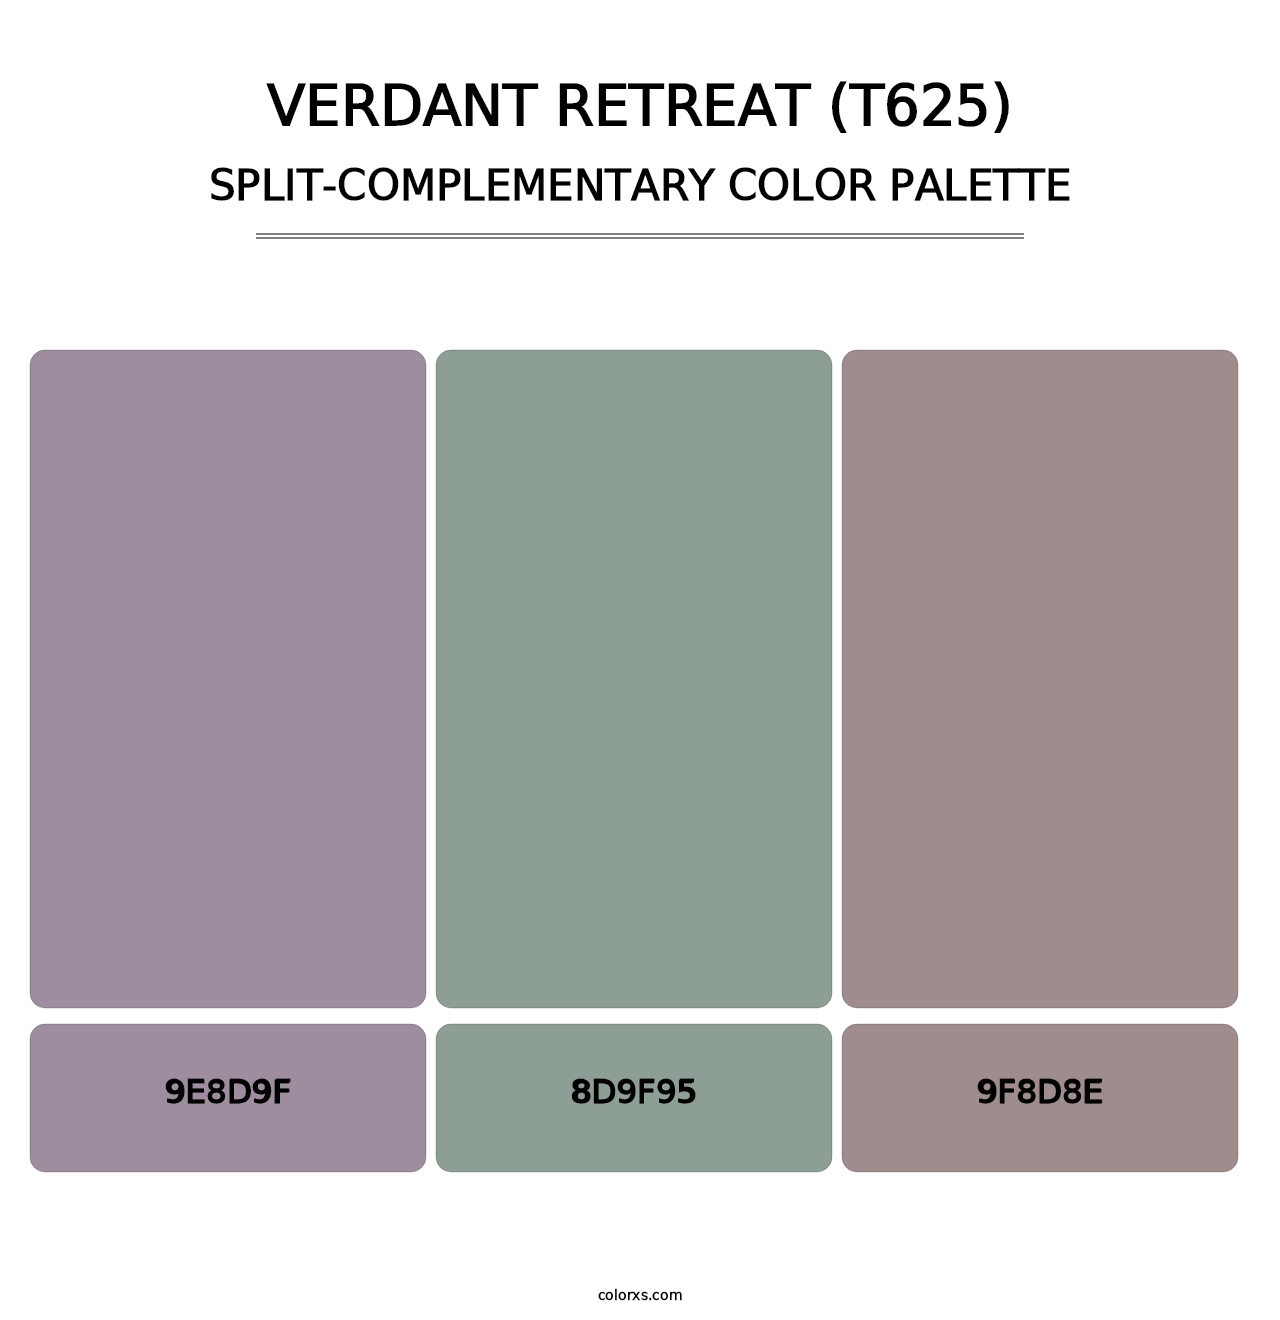 Verdant Retreat (T625) - Split-Complementary Color Palette